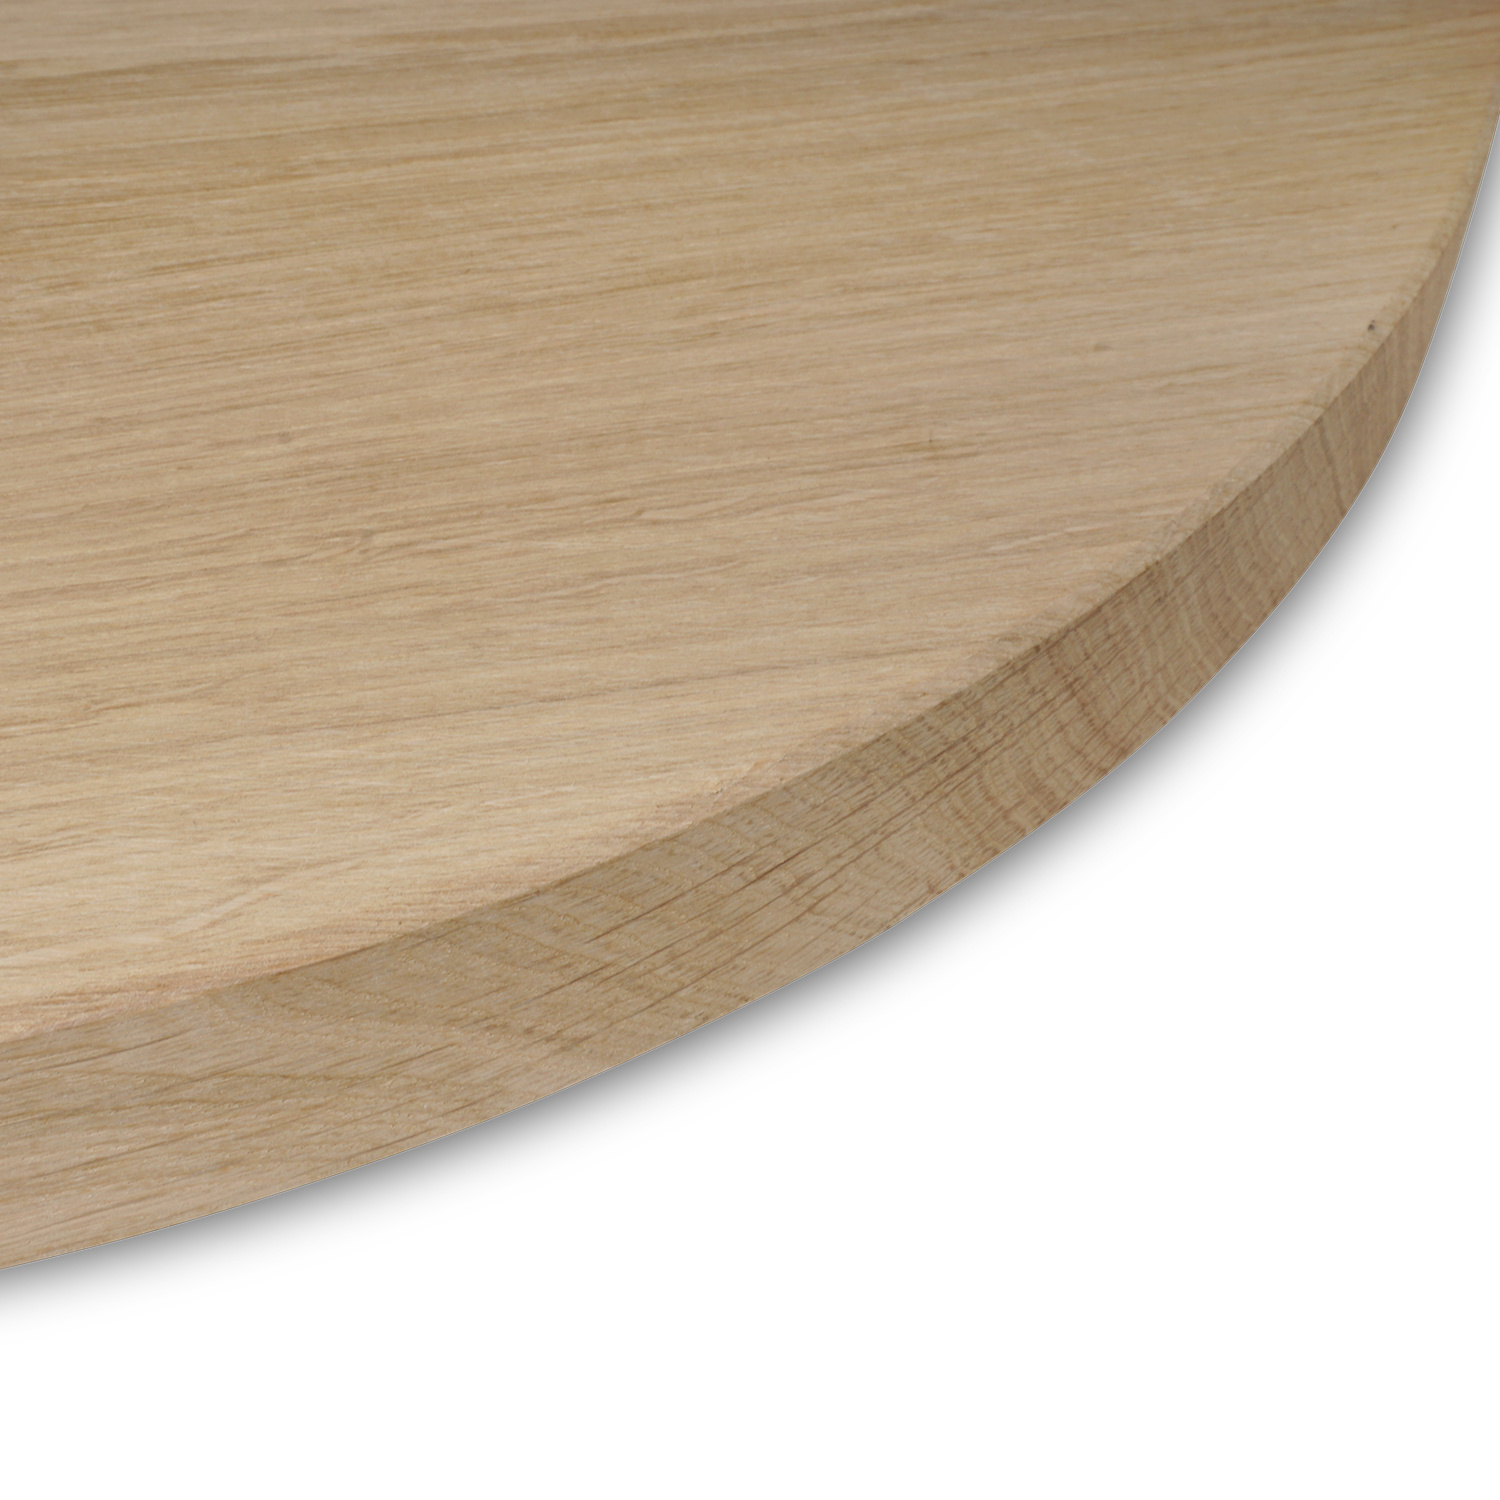  Rond eiken tafelblad op maat - 2,7 cm dik (1-laag) - foutvrij Europees eikenhout - met brede lamellen (circa 10-12 cm) - verlijmd kd 8-12% - diameter van 35 tot 117 cm